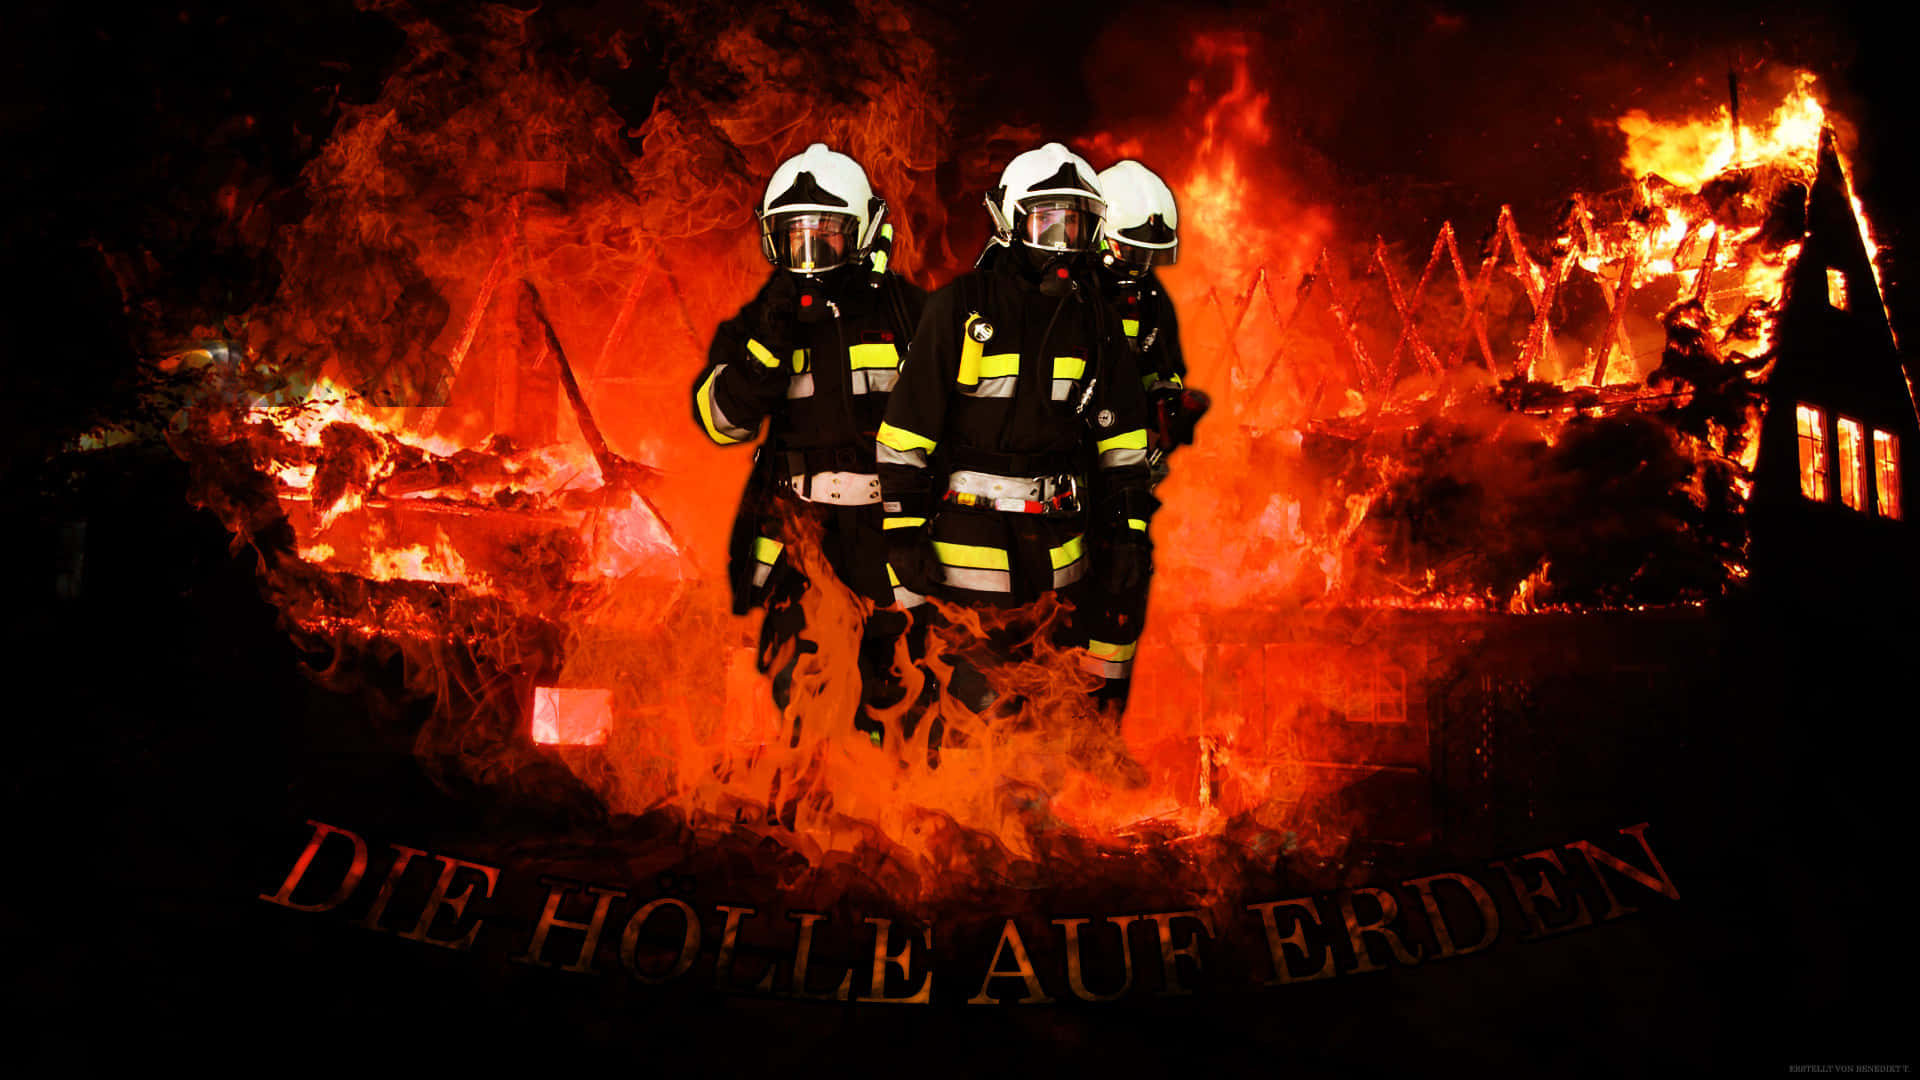 Firefighter Tackling A Dangerous Blaze Wallpaper